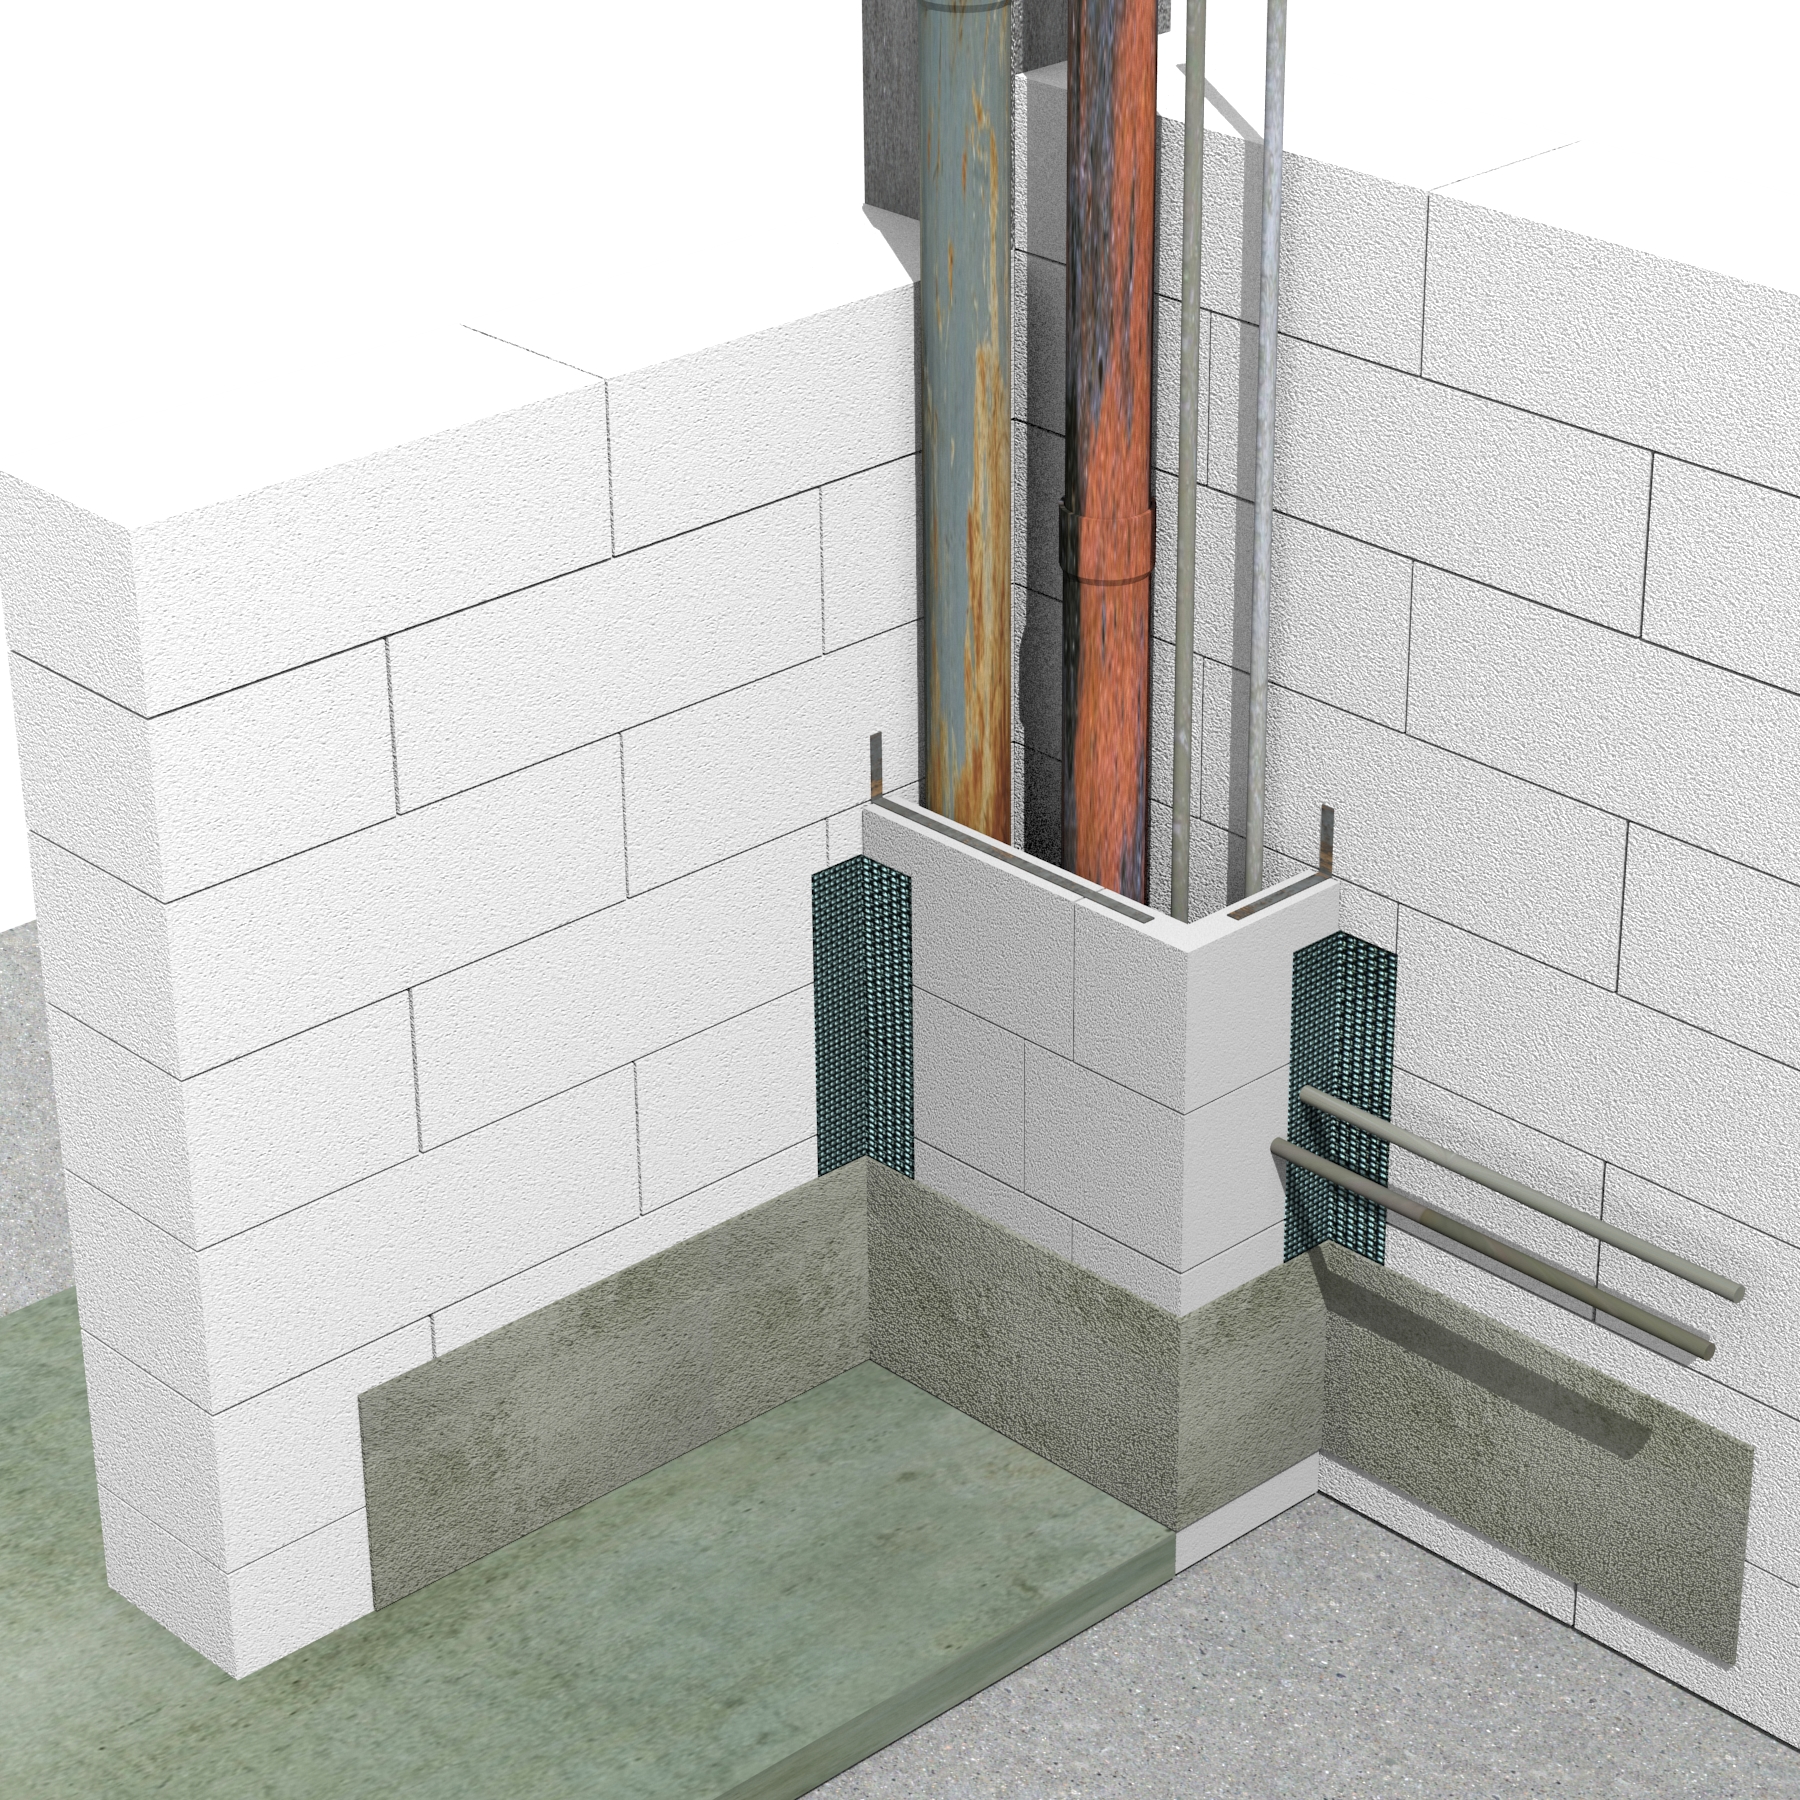 Detaliu de ghena de instalatii - Sistem de zidarie confinata din BCA Macon pentru constructii rezidentiale